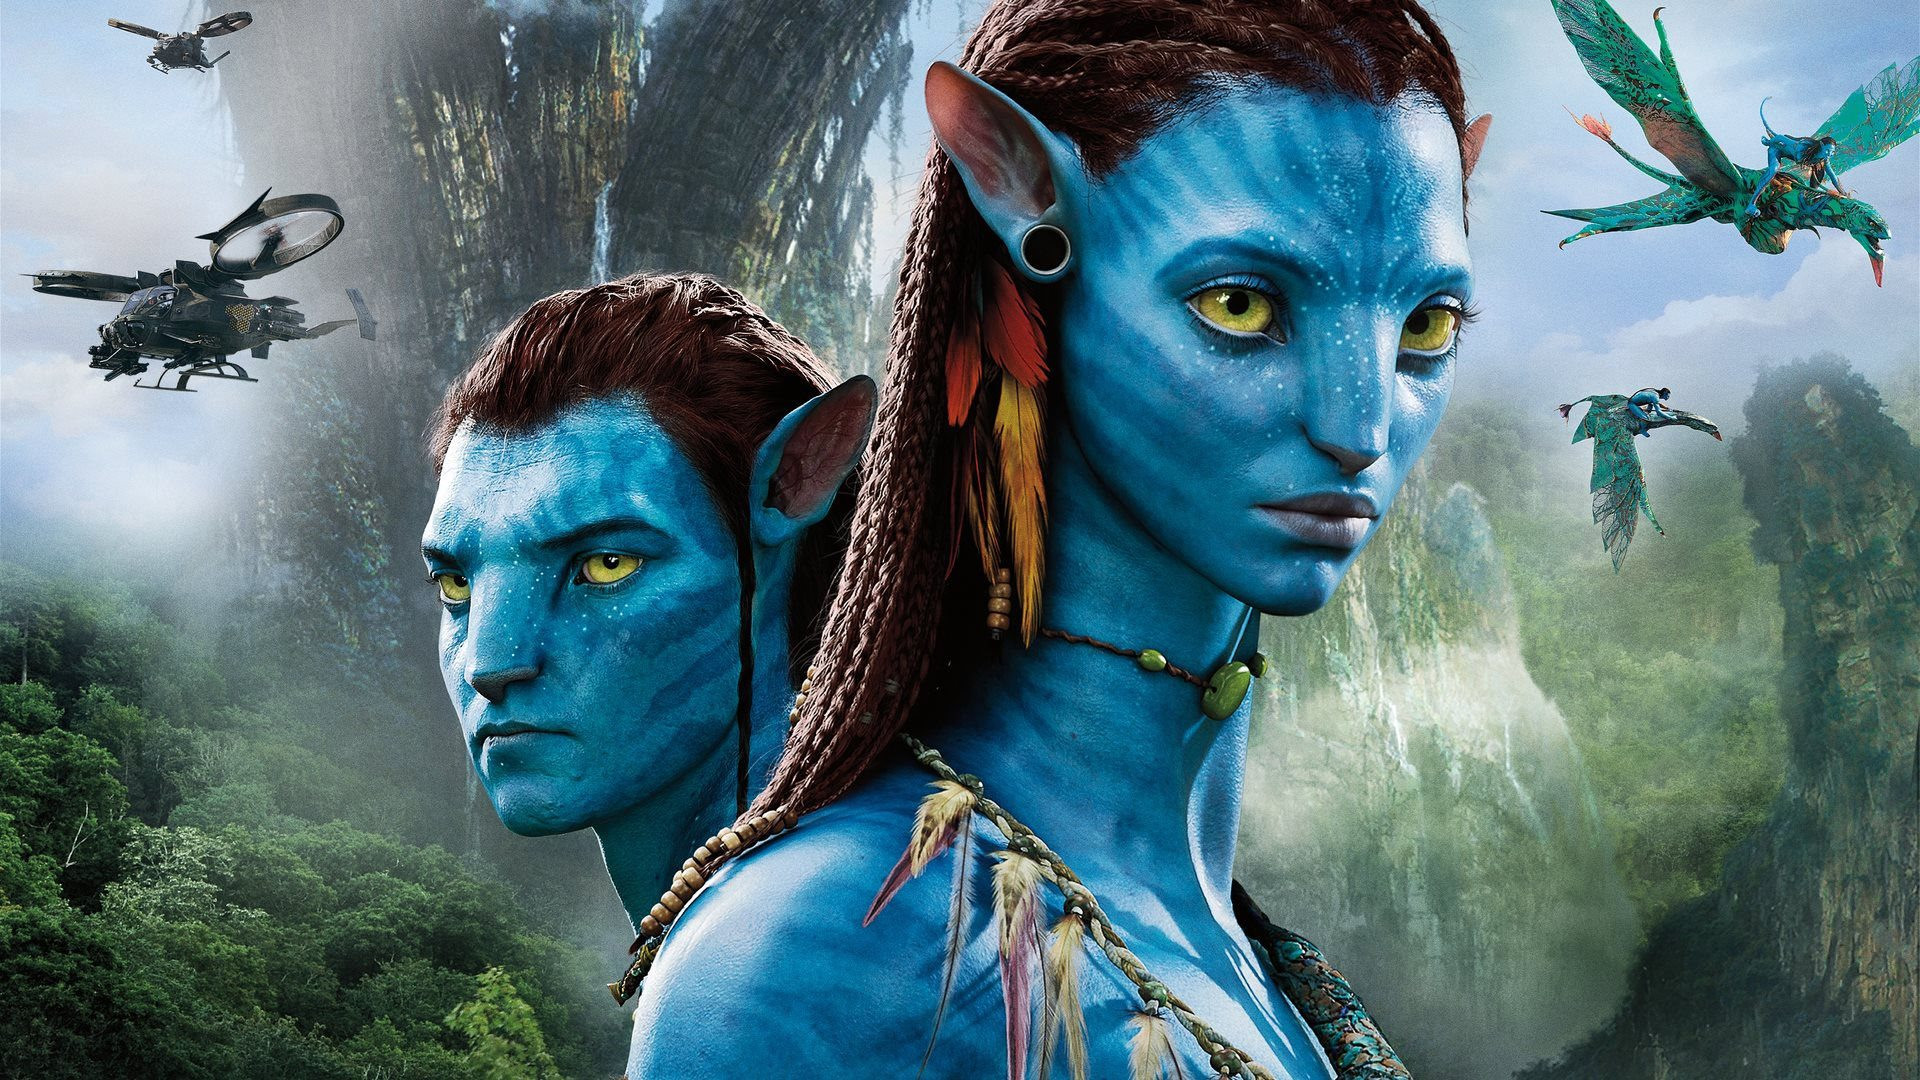 Nên mua vé rạp IMAX 4DX hay ScreenX để xem Avatar Dòng chảy của nước  trọn vẹn nhất